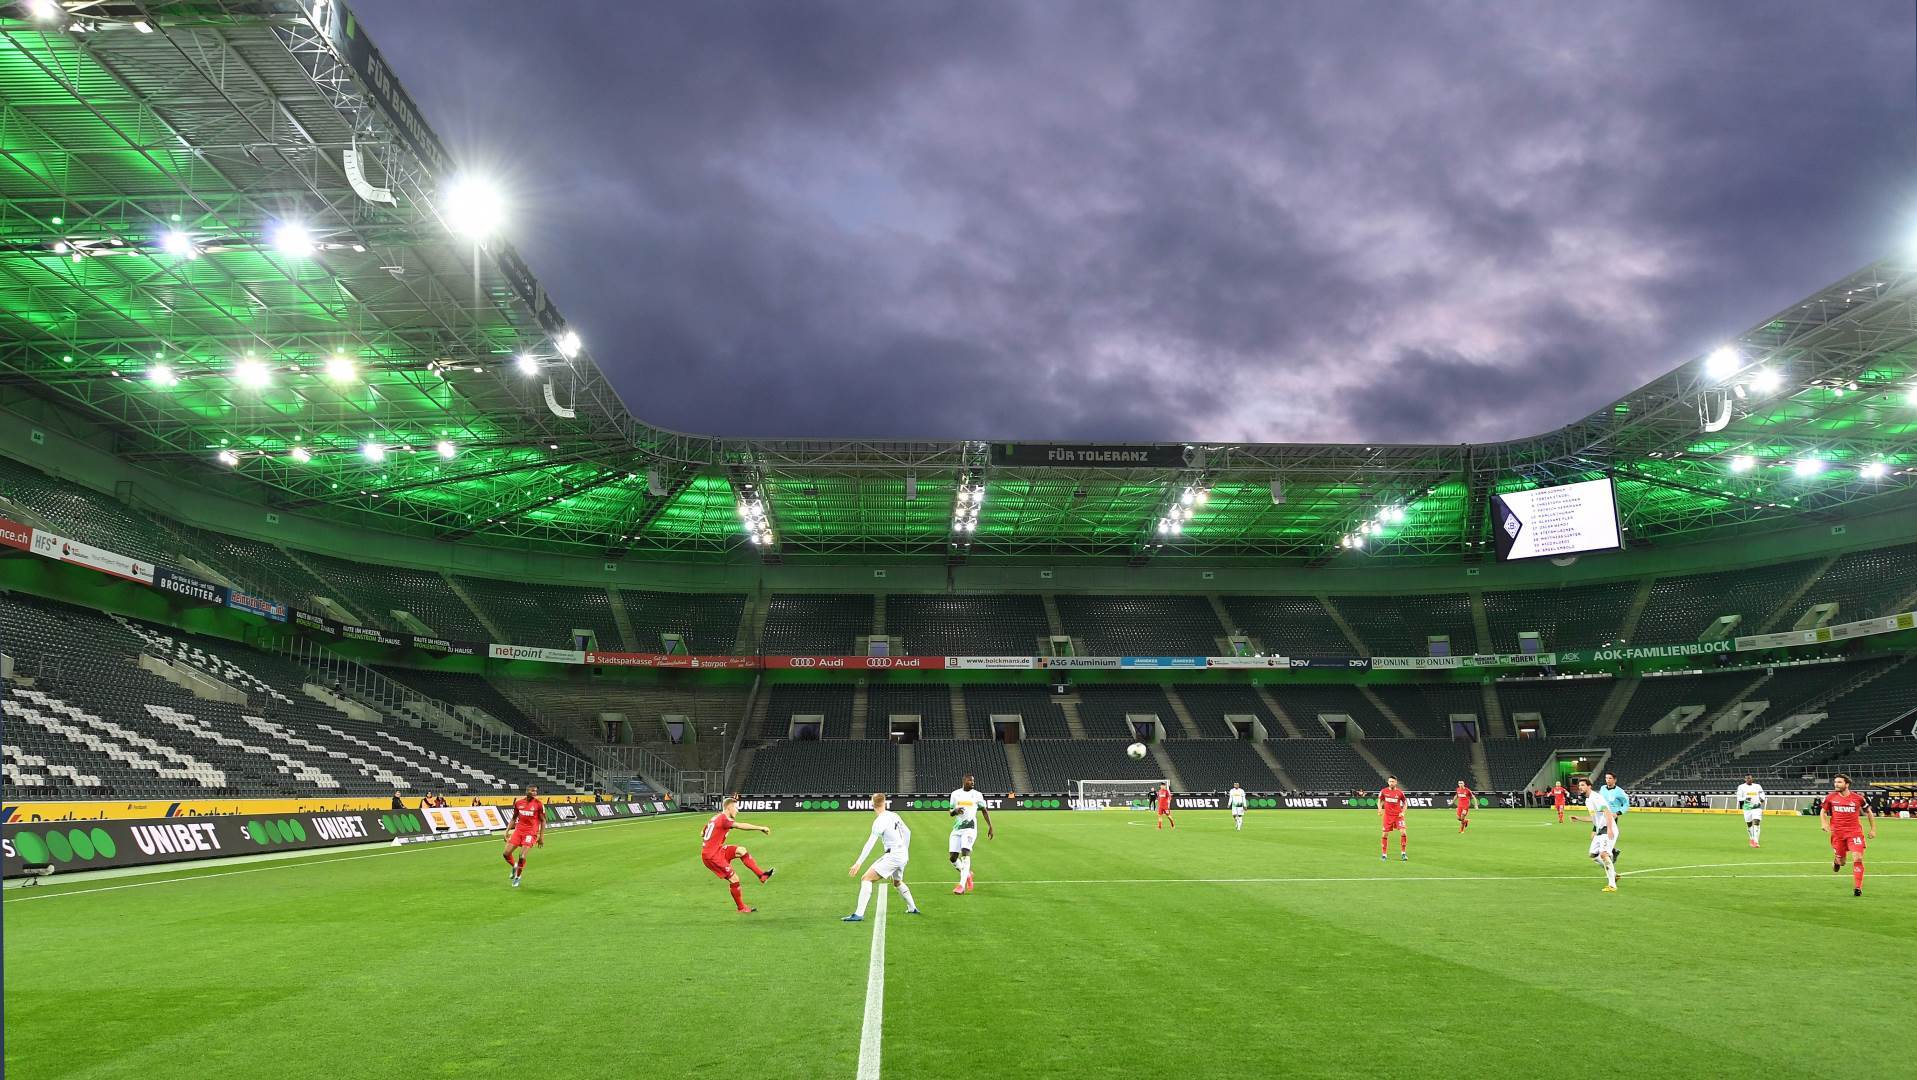  Bundesliga-prenosi-na-Eurosport-Pet-izmena-na-utakmicama-u-Njemackoj-dok-traje-pandemija 